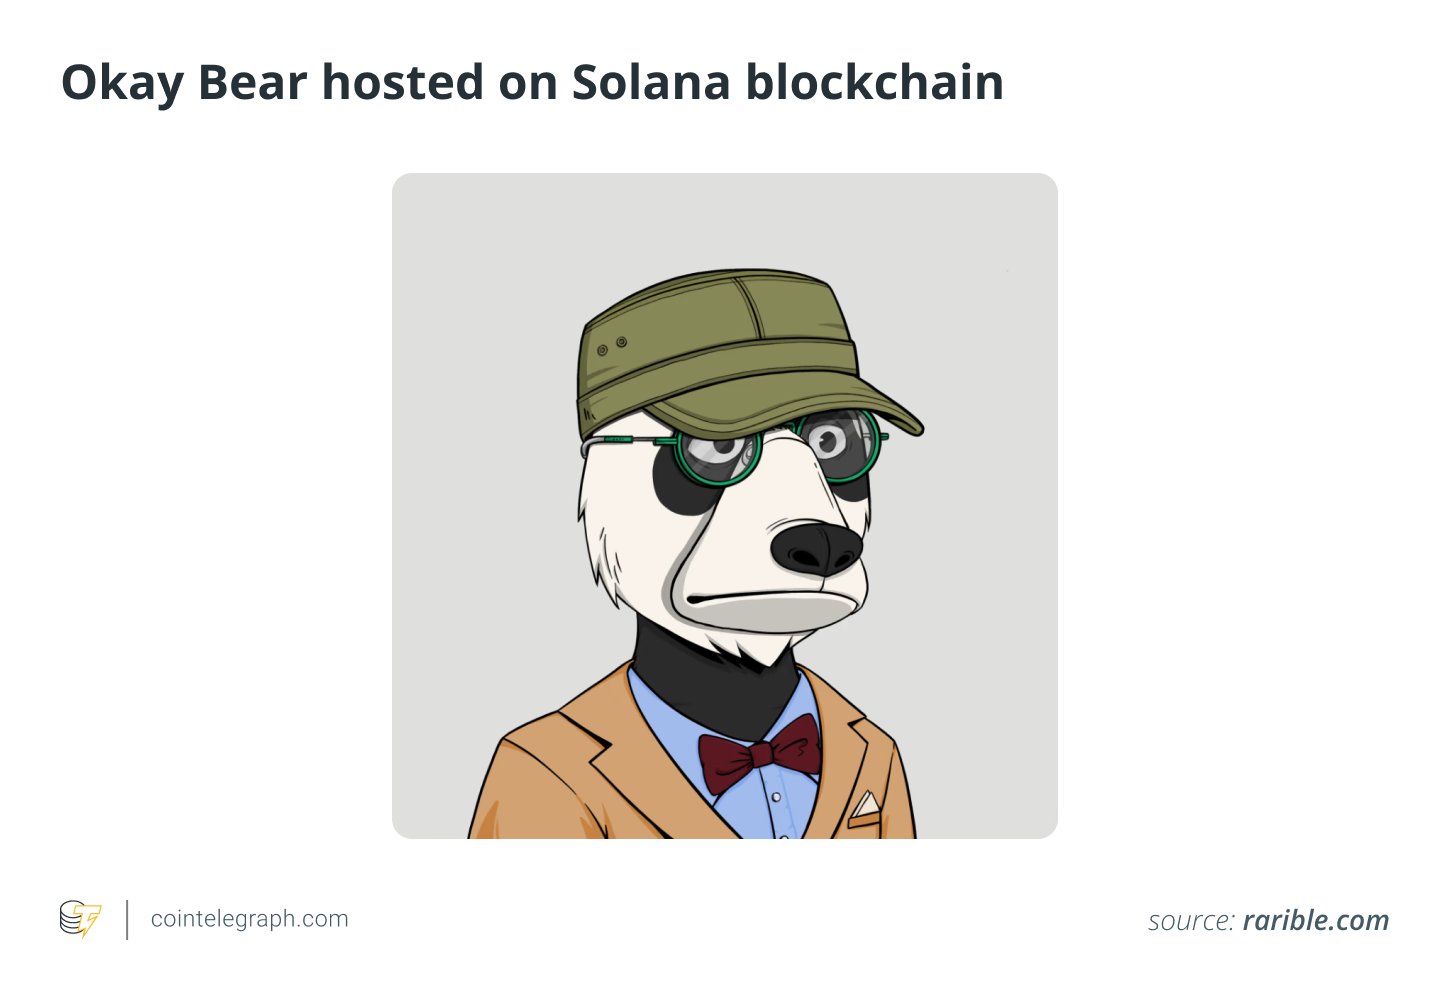 Okay Bear hosted on Solana blockchain